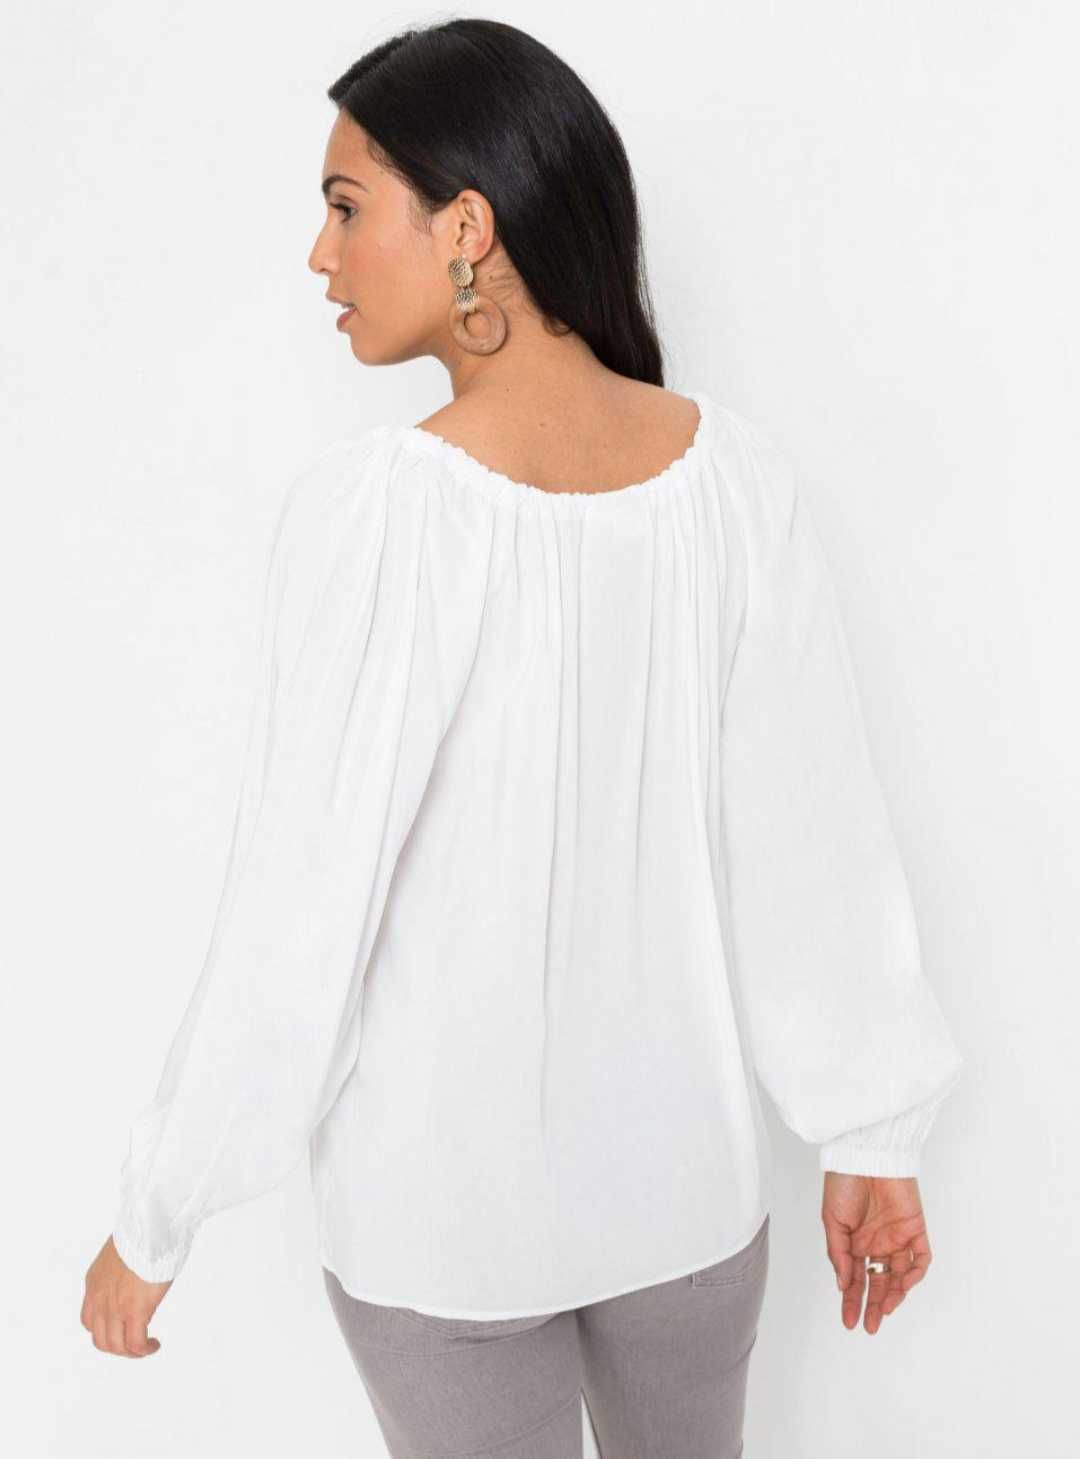 Nowa bluzka damska biała z wiskozy zwiewna Boho modna 36 s